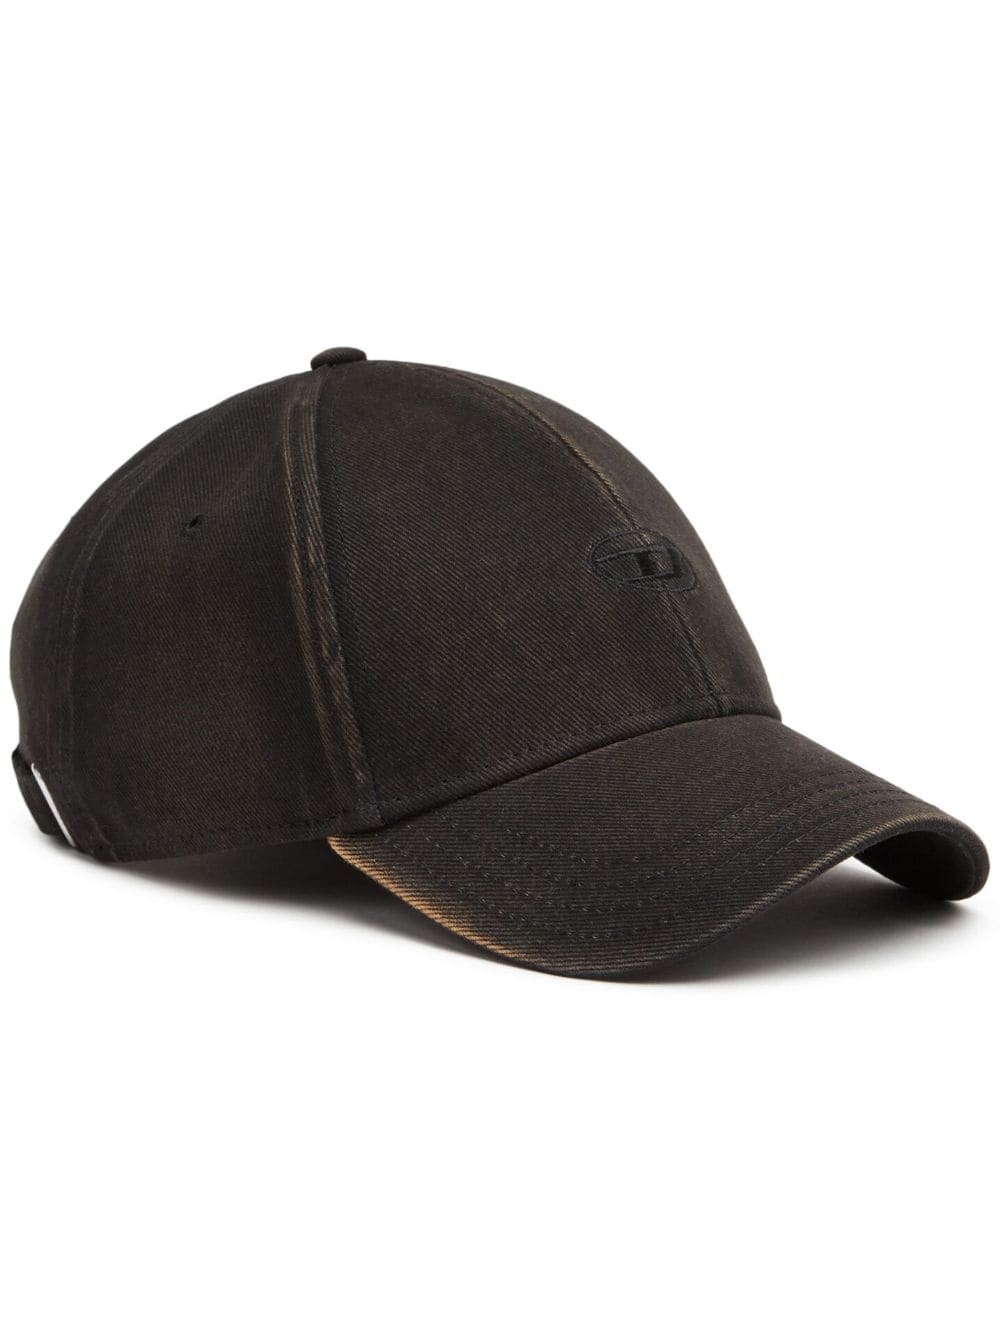 cotton baseball cap - 1